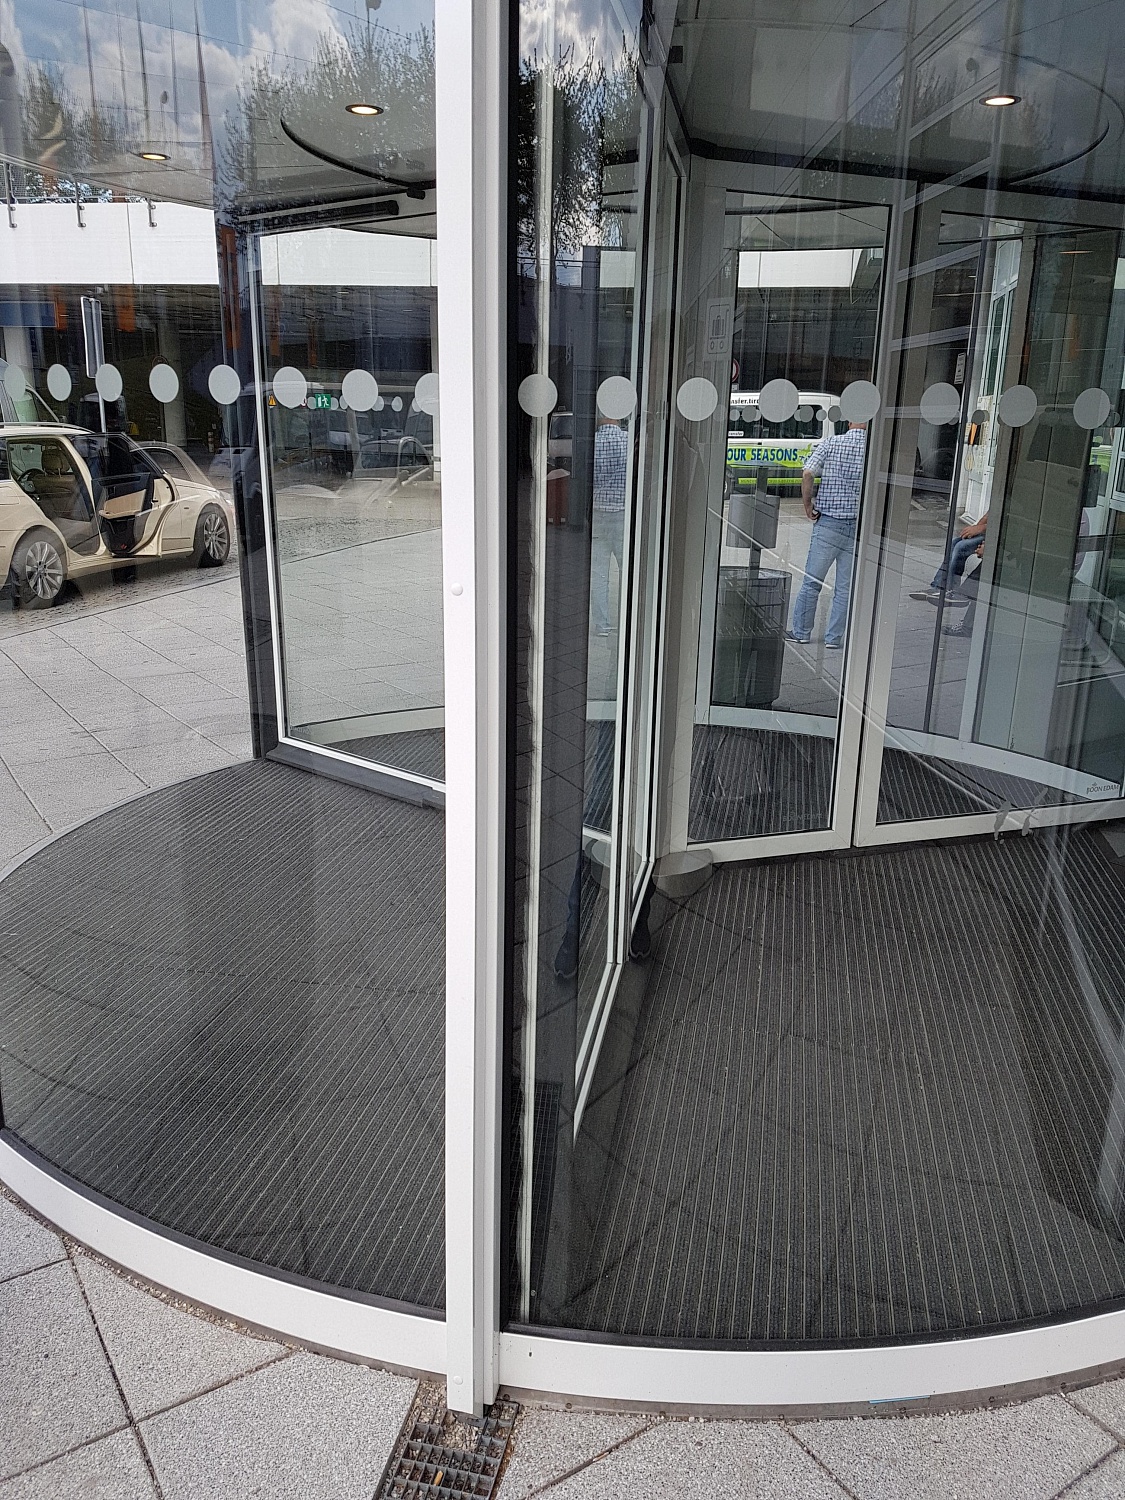 Заказать установку автоматических дверей в Гулькевичах. Монтаж выполняется командой профессионалов с опытом работы более 9 лет. 